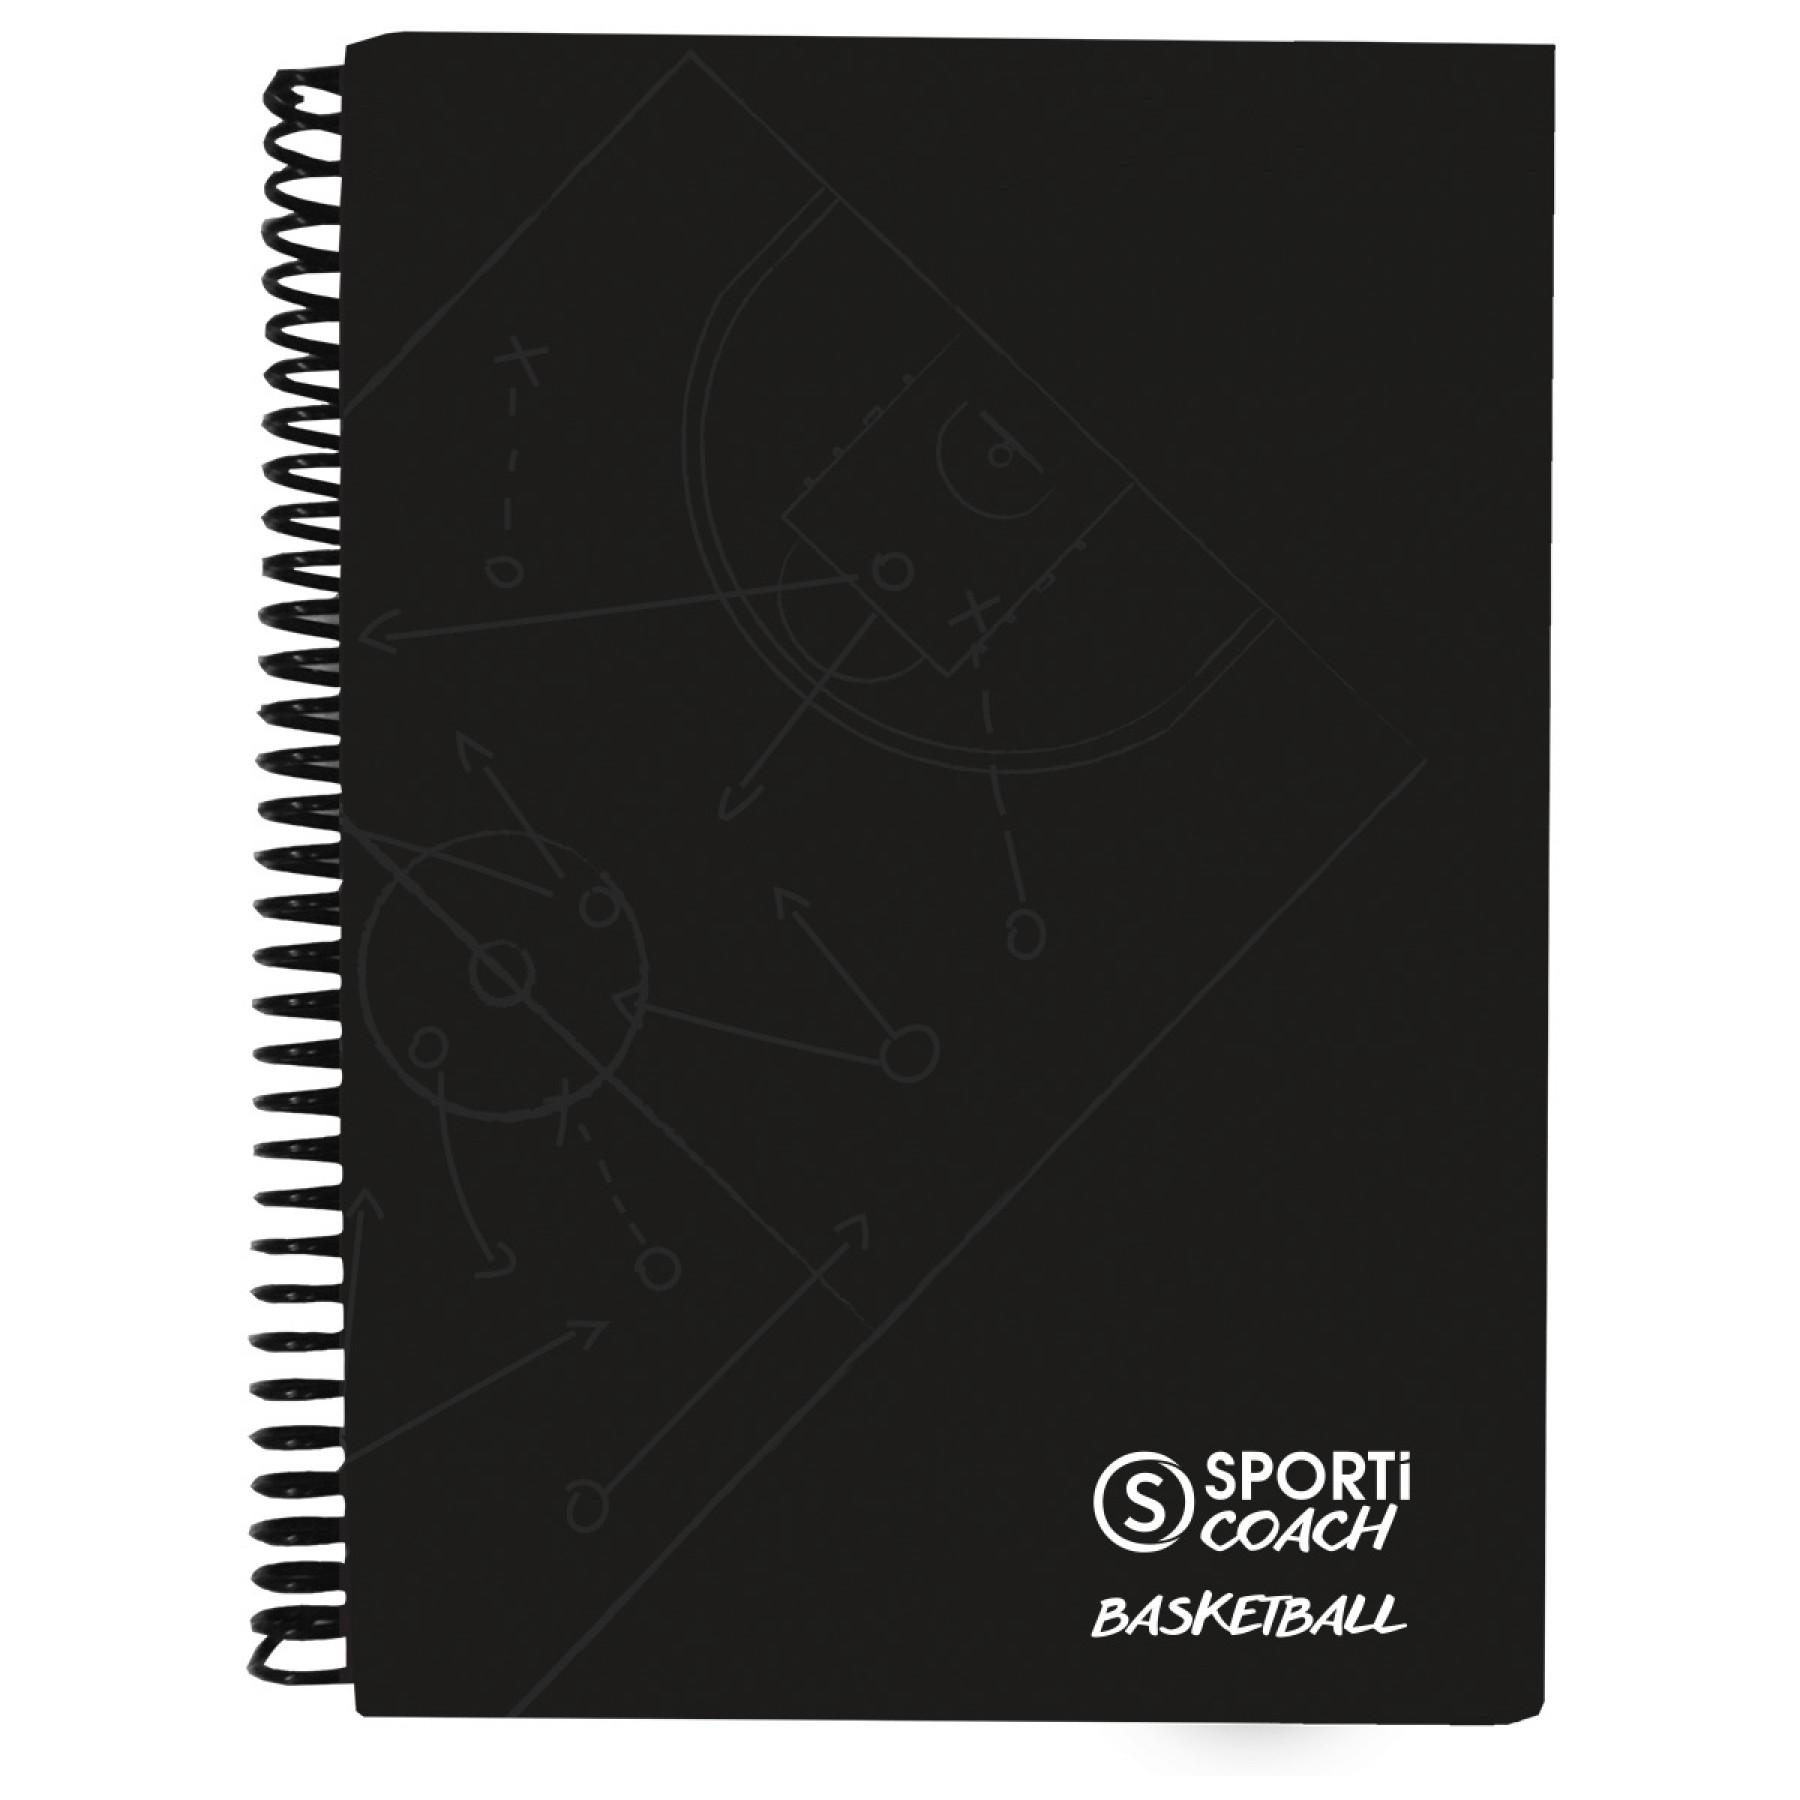 caderno a4 com espiral para treinador de basquetebol Sporti